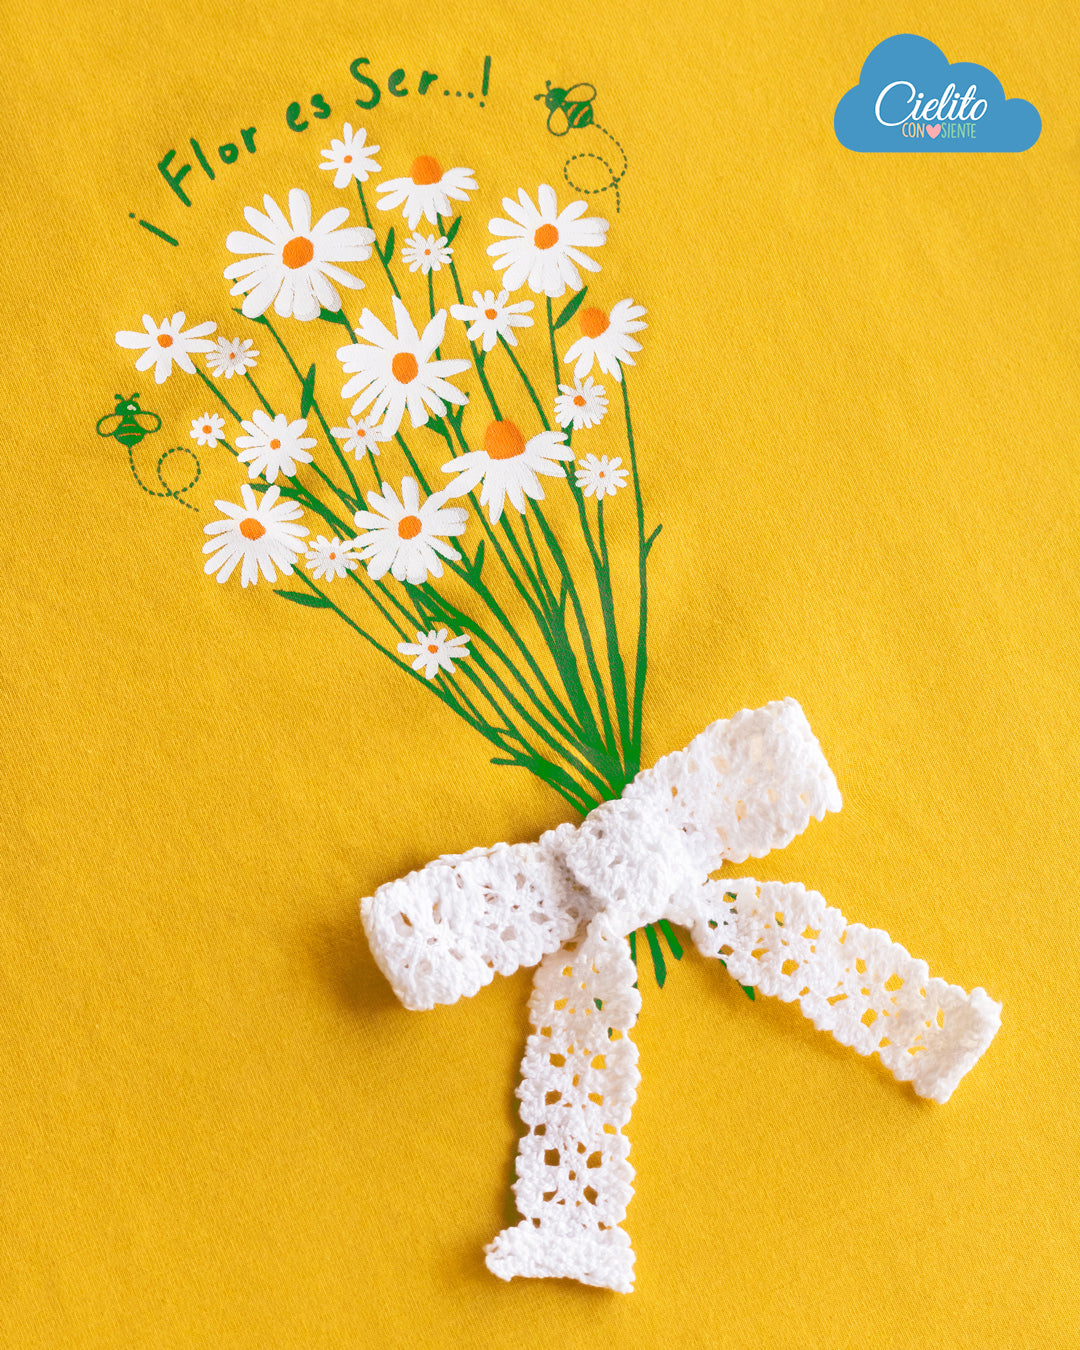 Camiseta mostaza con estampado de flores y boleros para niña